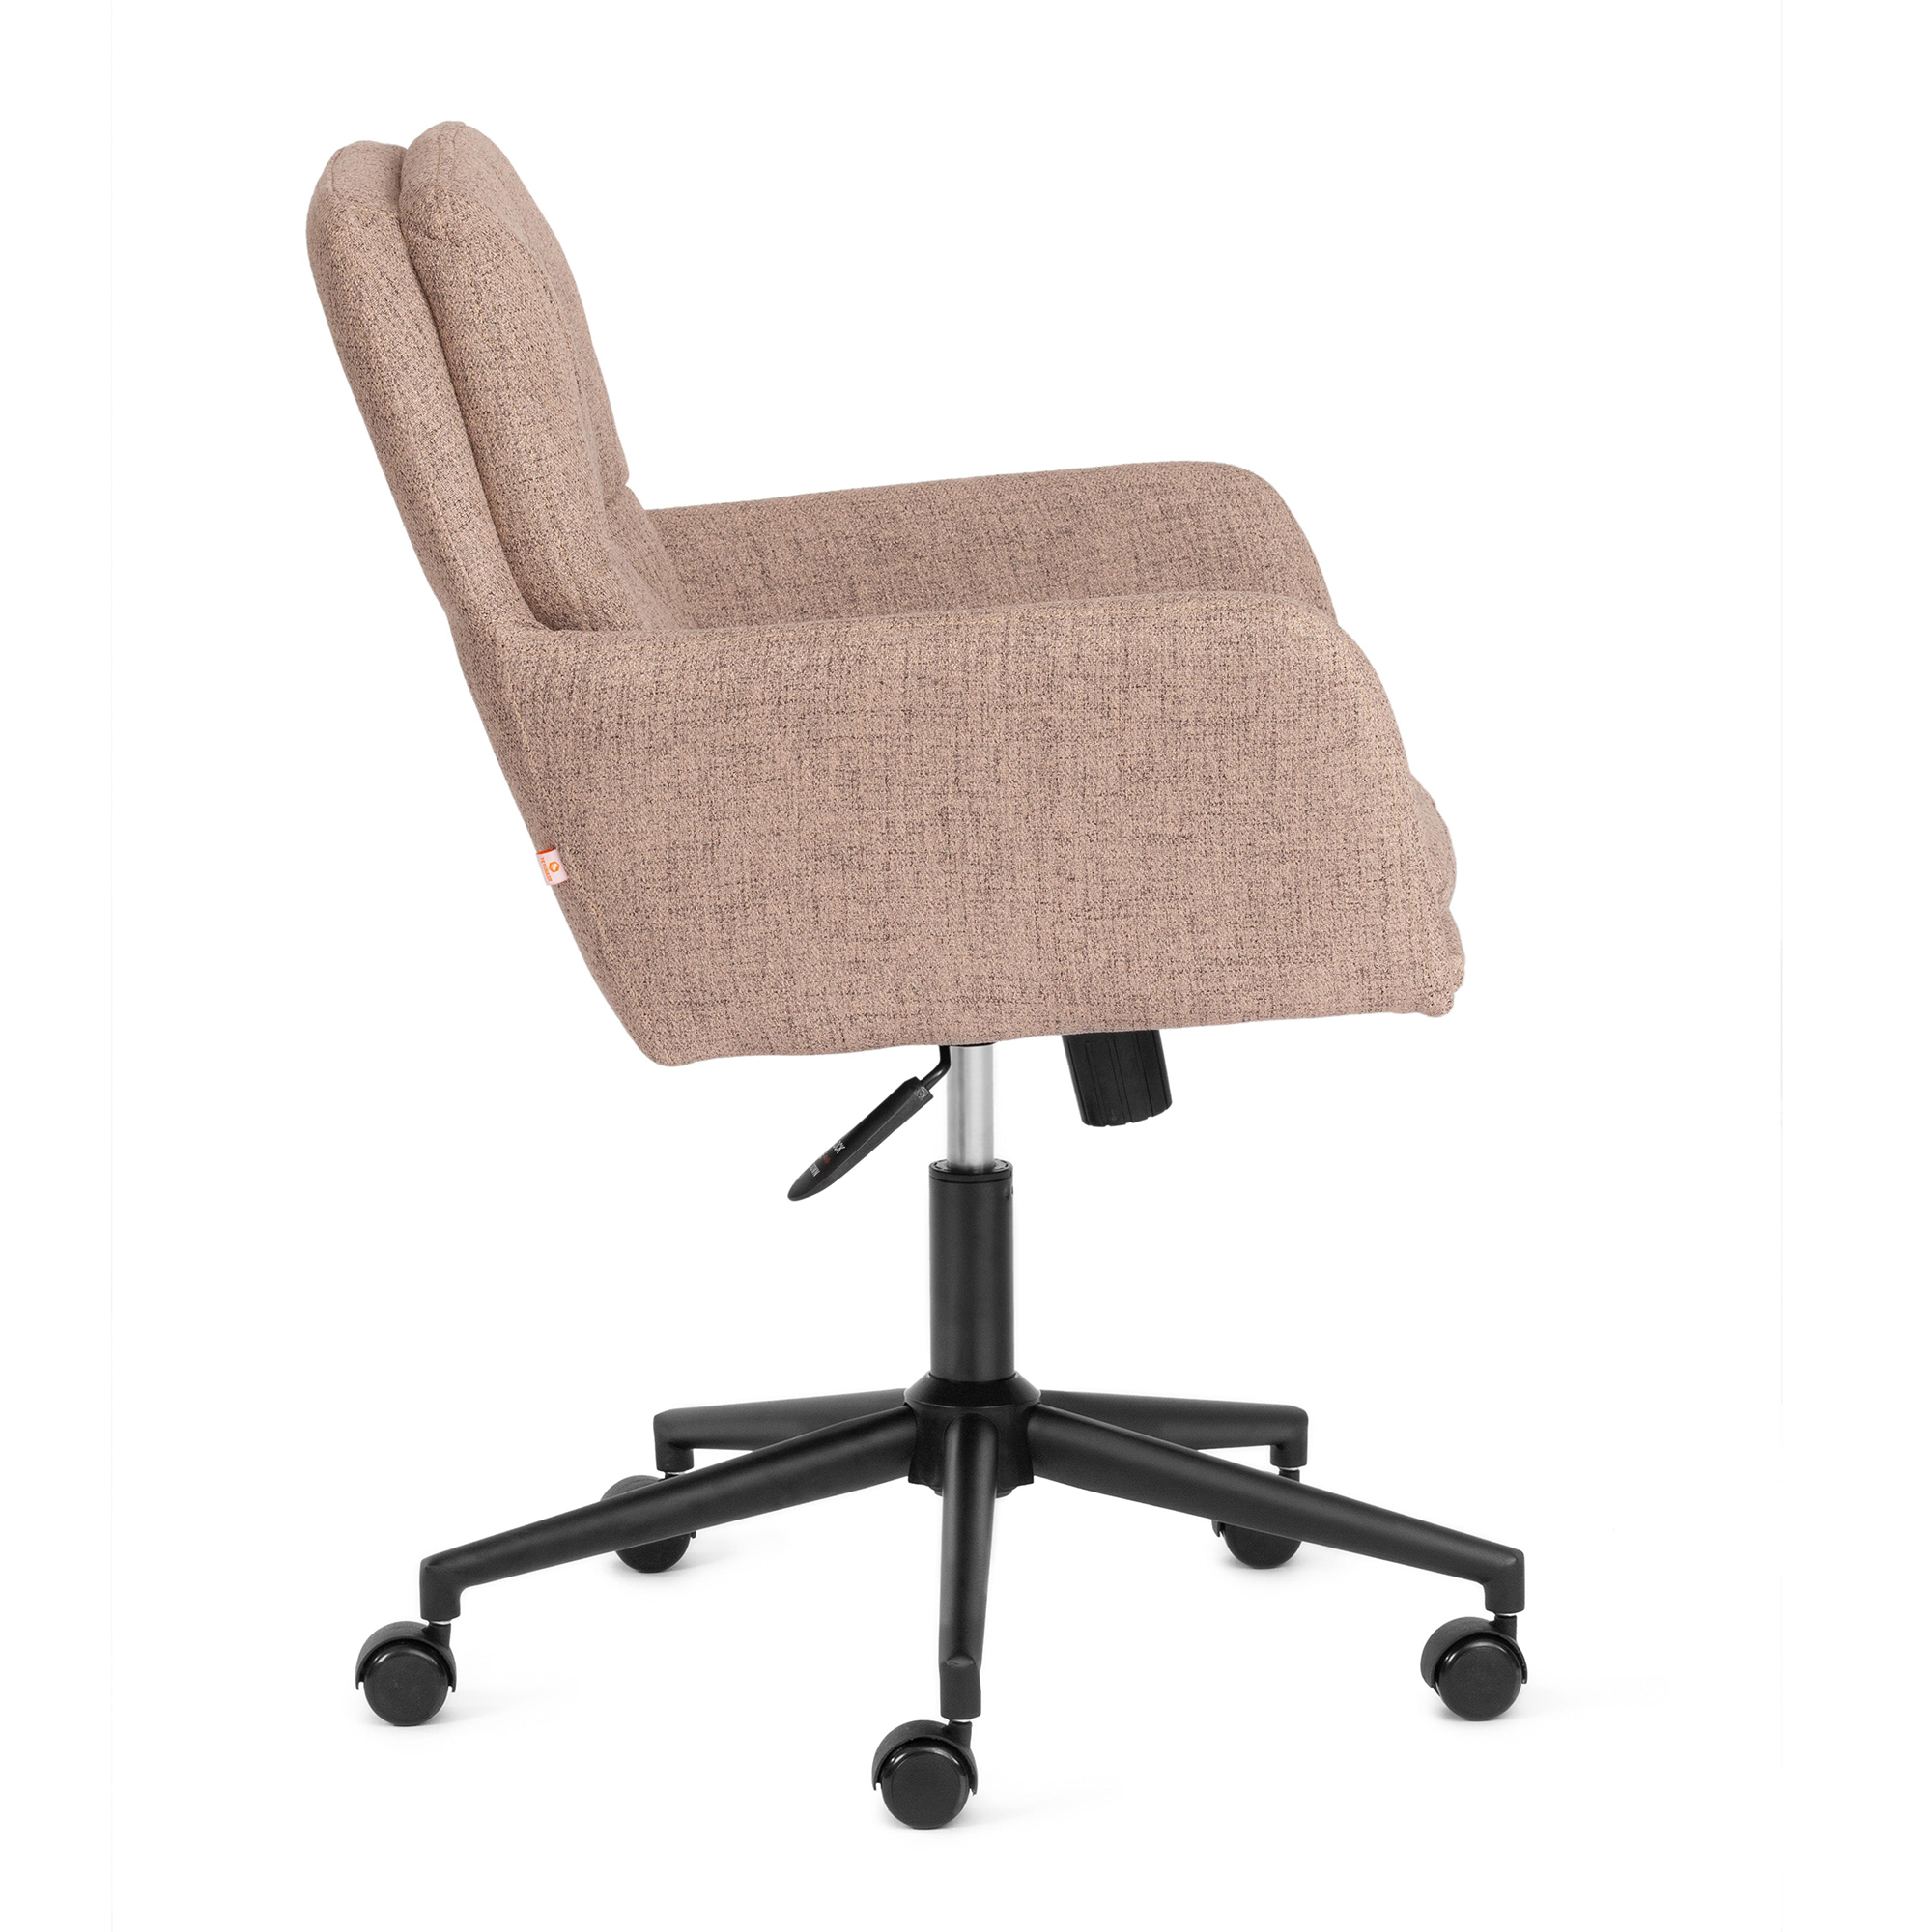 Твой дом офисные стулья